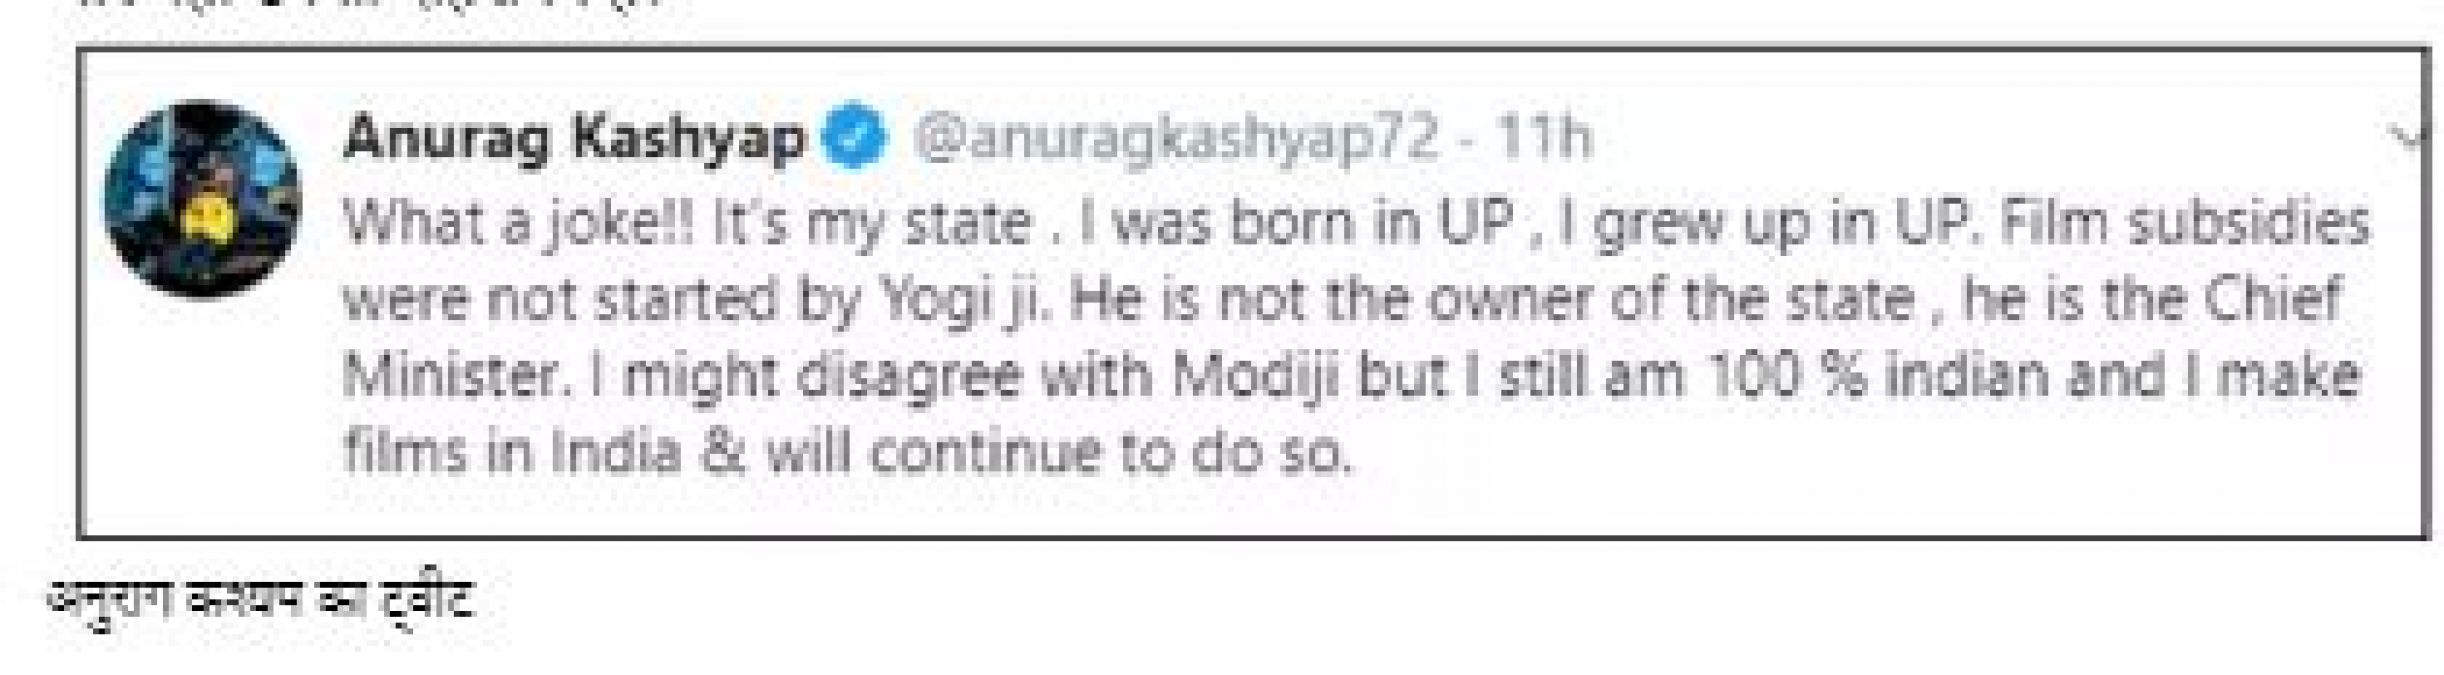 अनुराग कश्यप ने मधुर भंडारकर को घेरा, कहा- यूपी के मालिक नहीं है योगी